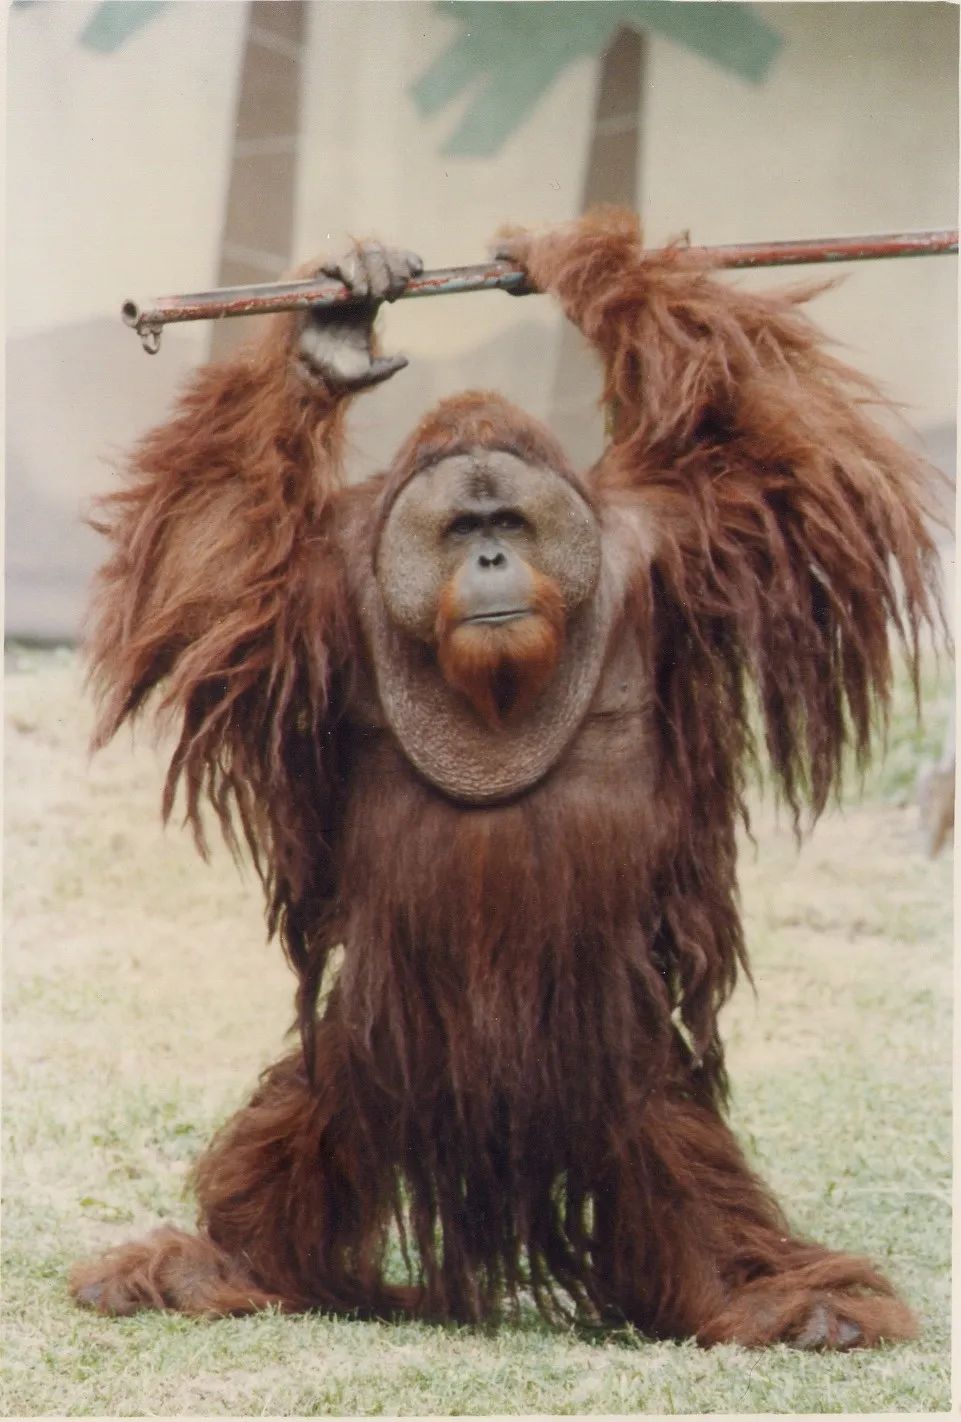 上海动物园最年长猩猩森泰离世,终年45岁,相当于人类90岁高龄